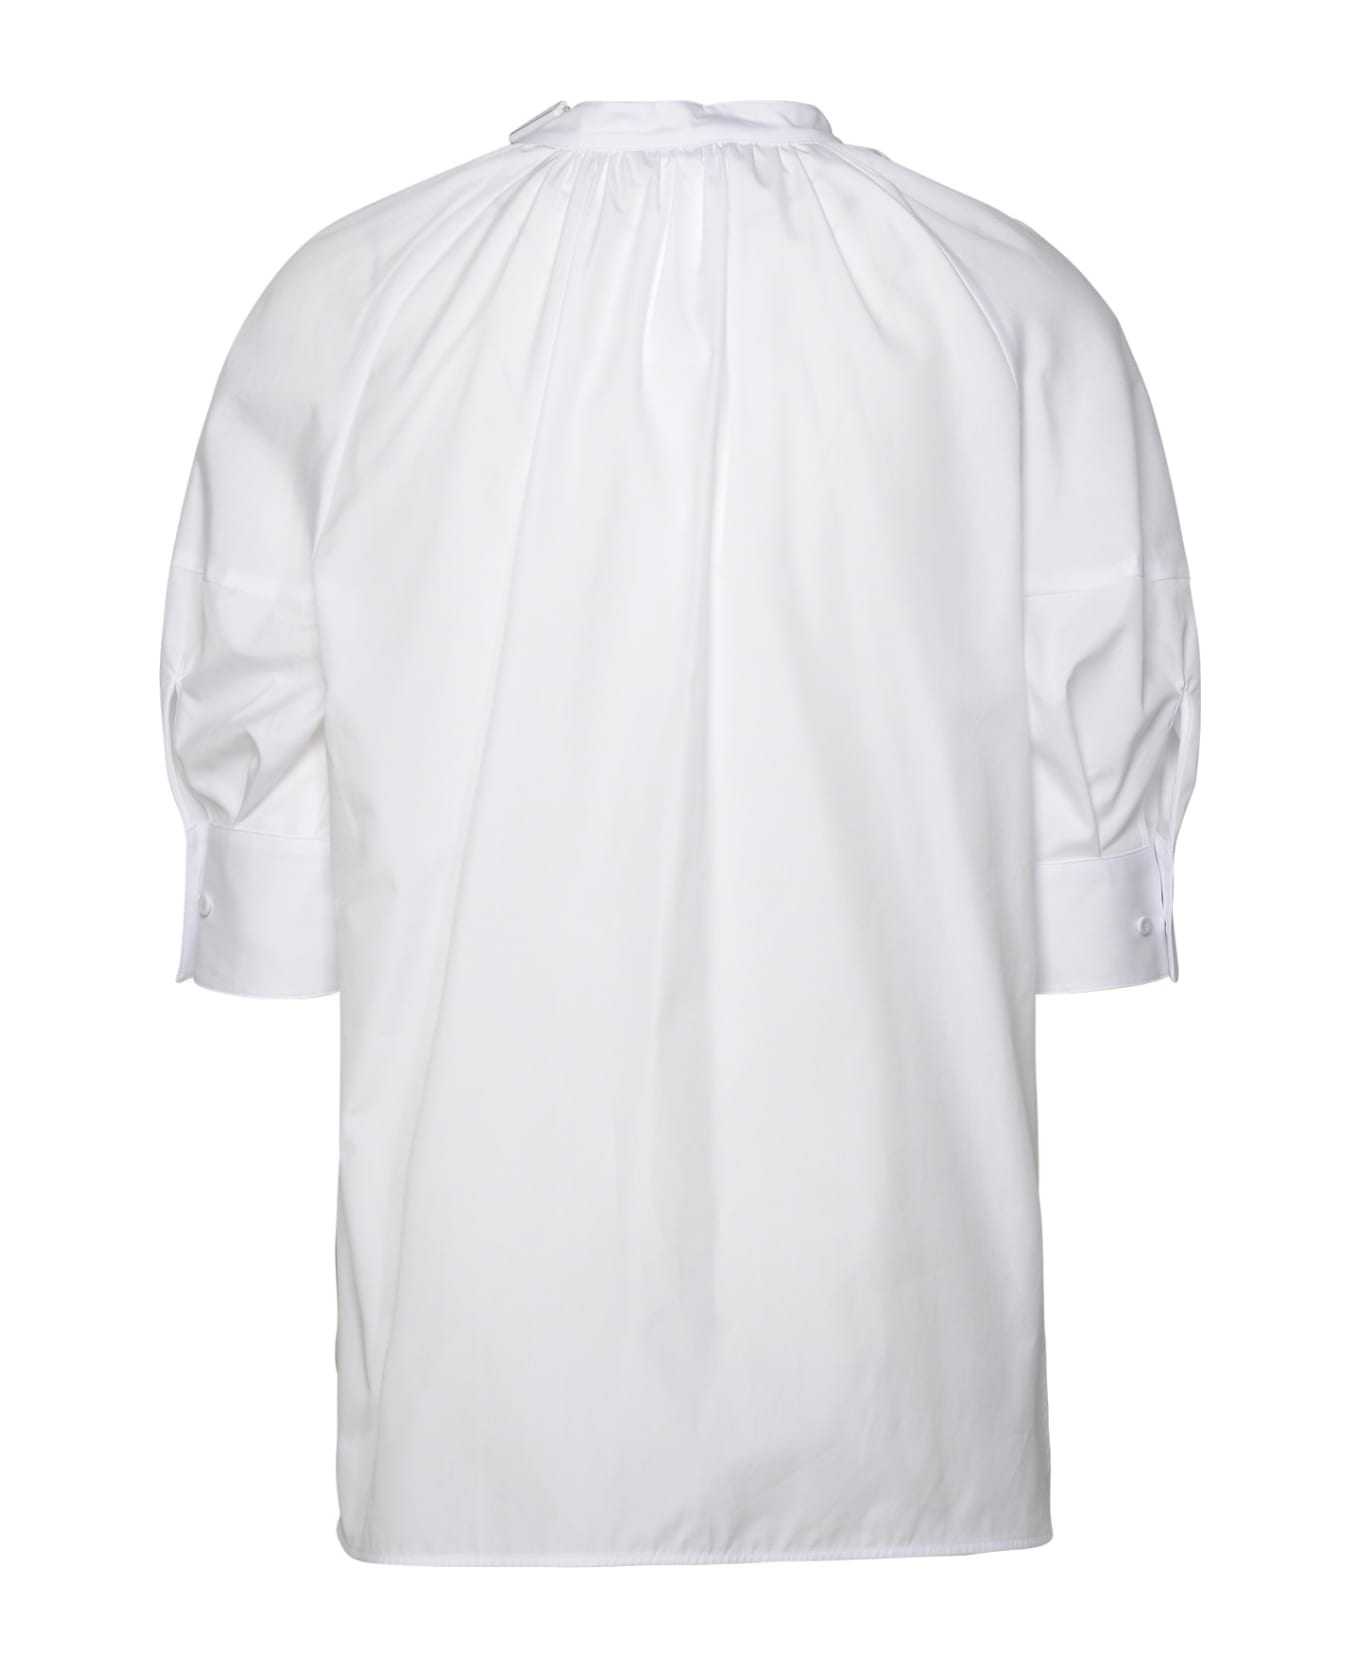 Max Mara 'carpi' White Cotton Shirt - White ブラウス